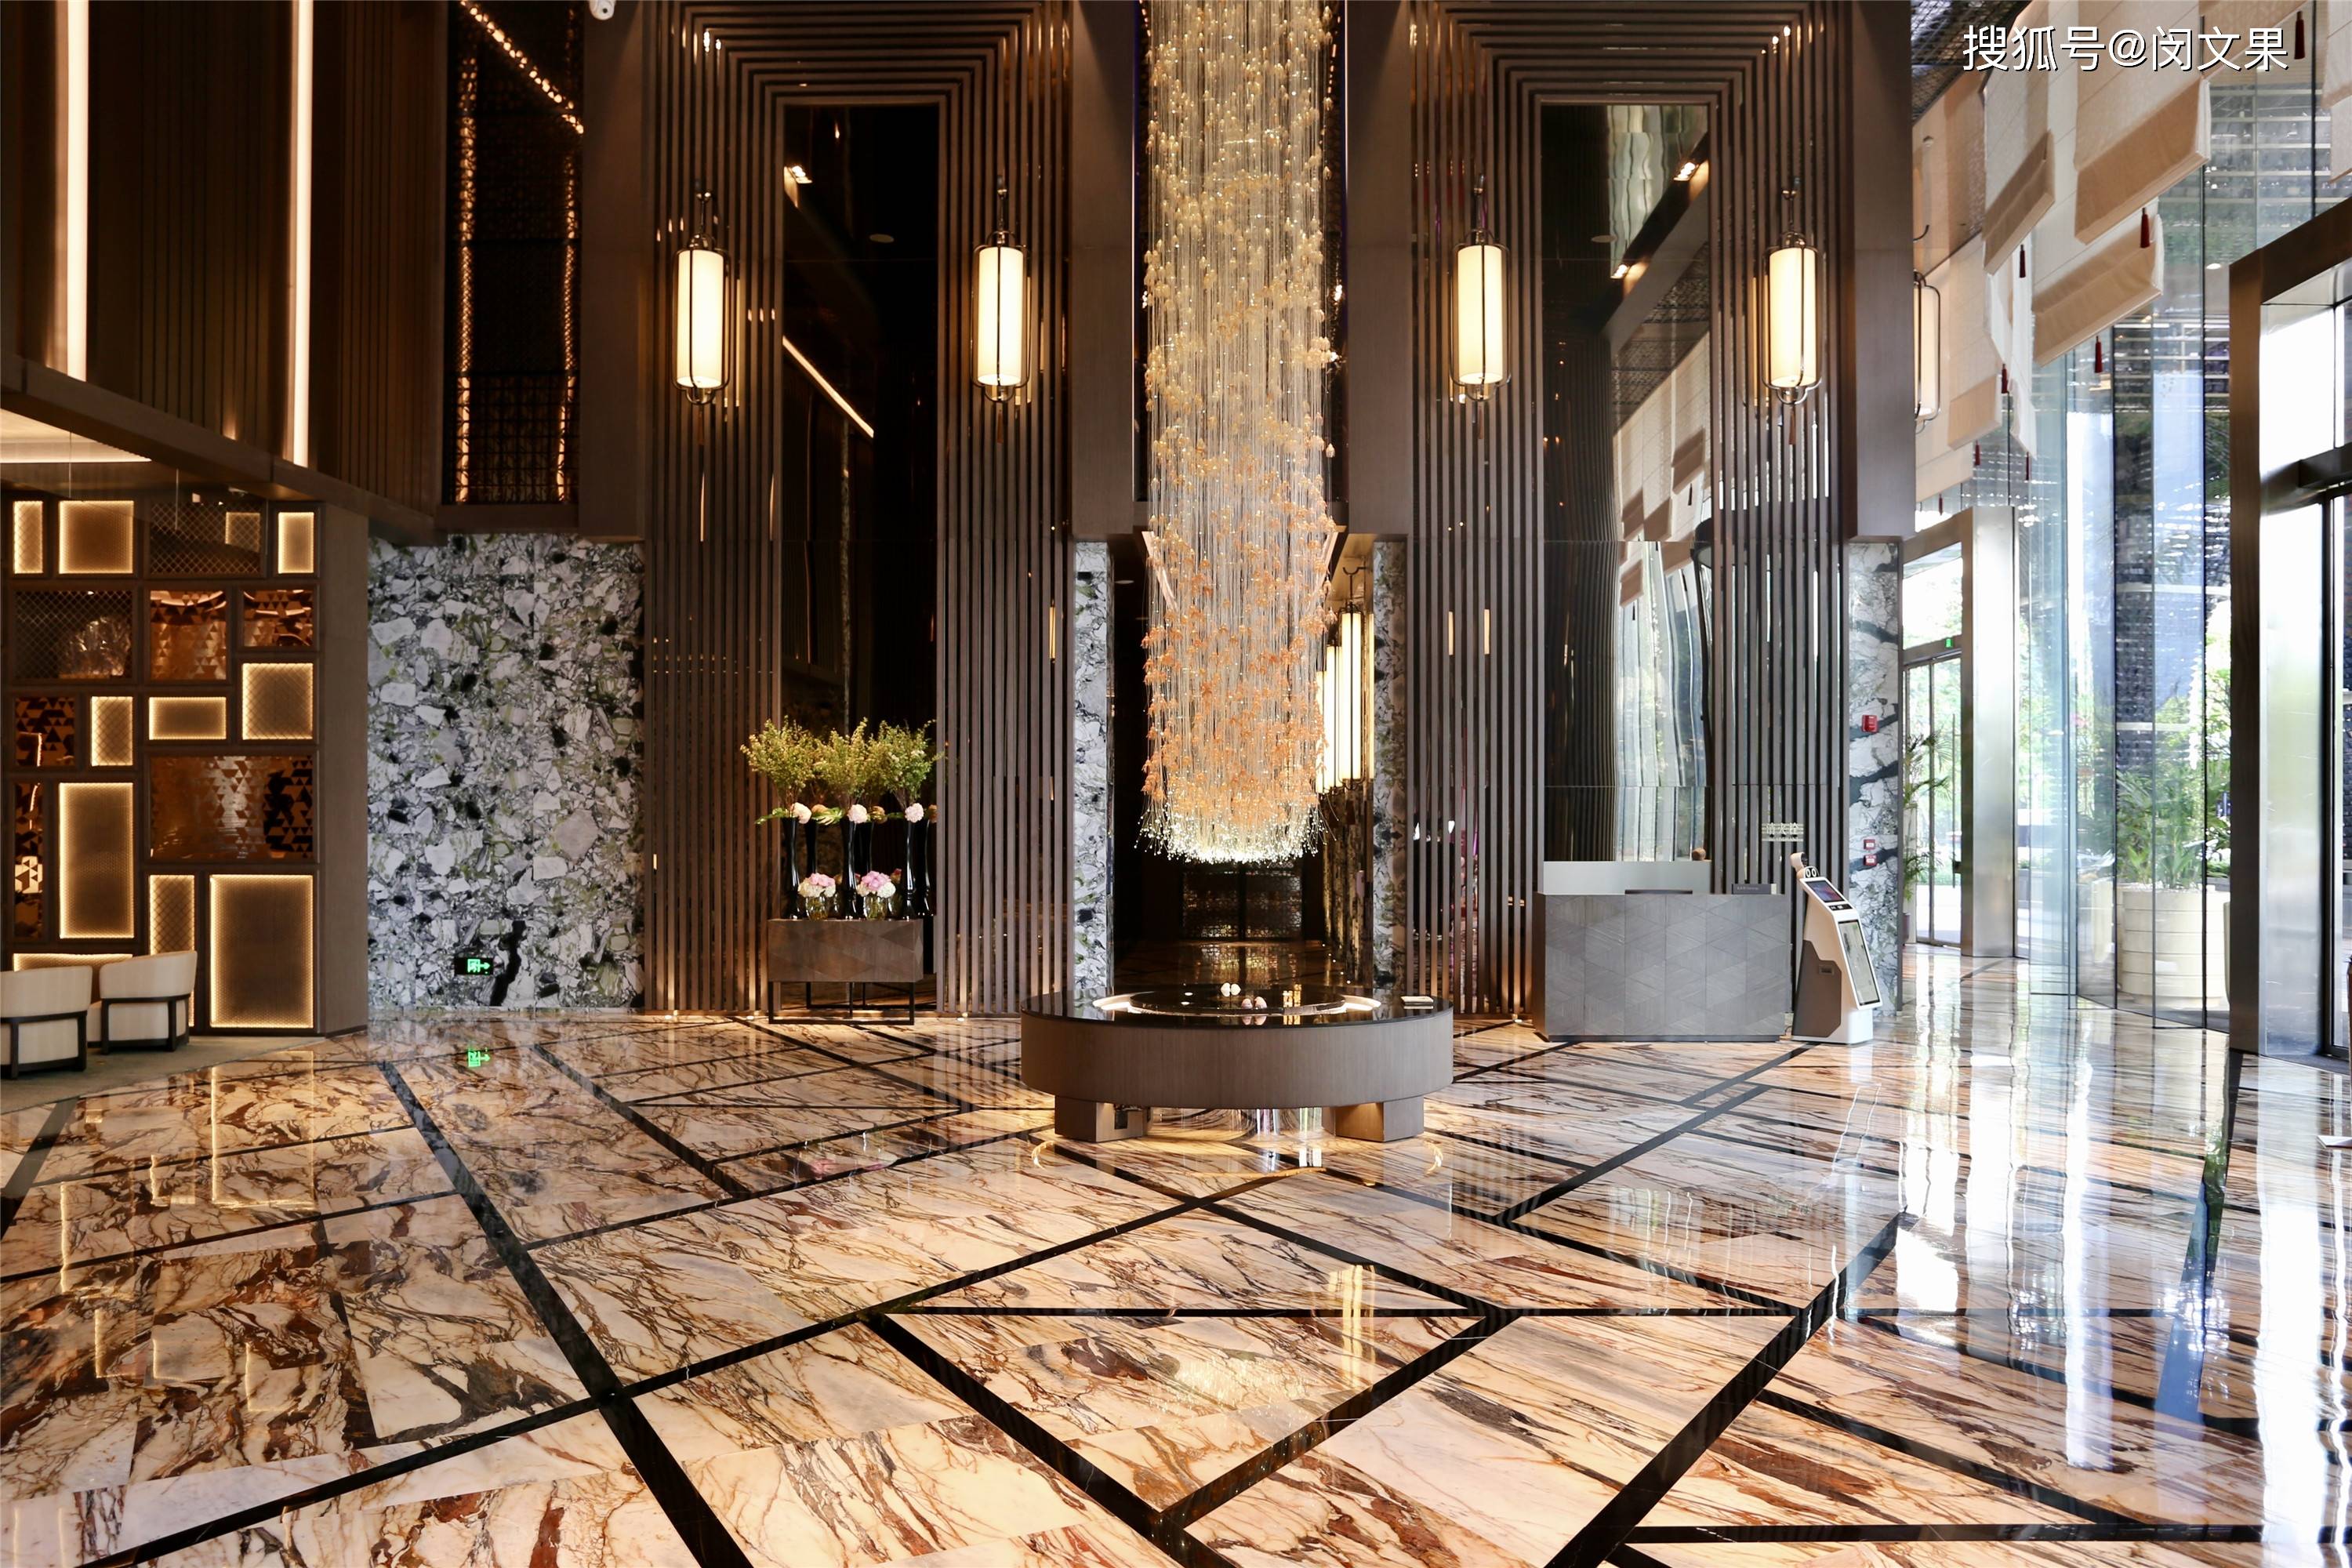 原创珠江新城心脏地带,唐风演绎极致奢华|广州卓美亚酒店